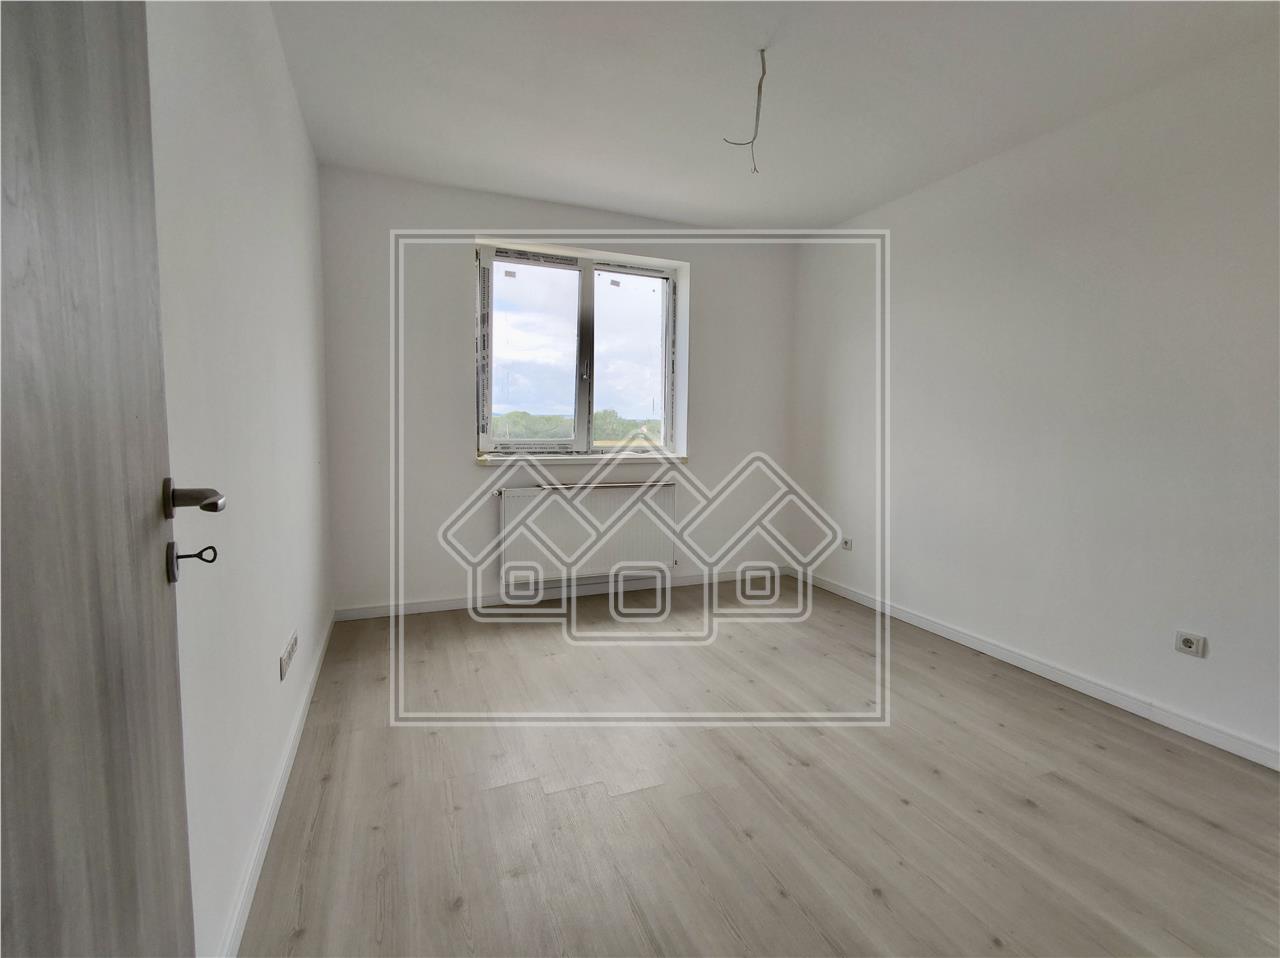 Wohnung zum Verkauf in Sibiu - 3 Zimmer, freistehend - FERTIG SCHL?SSE